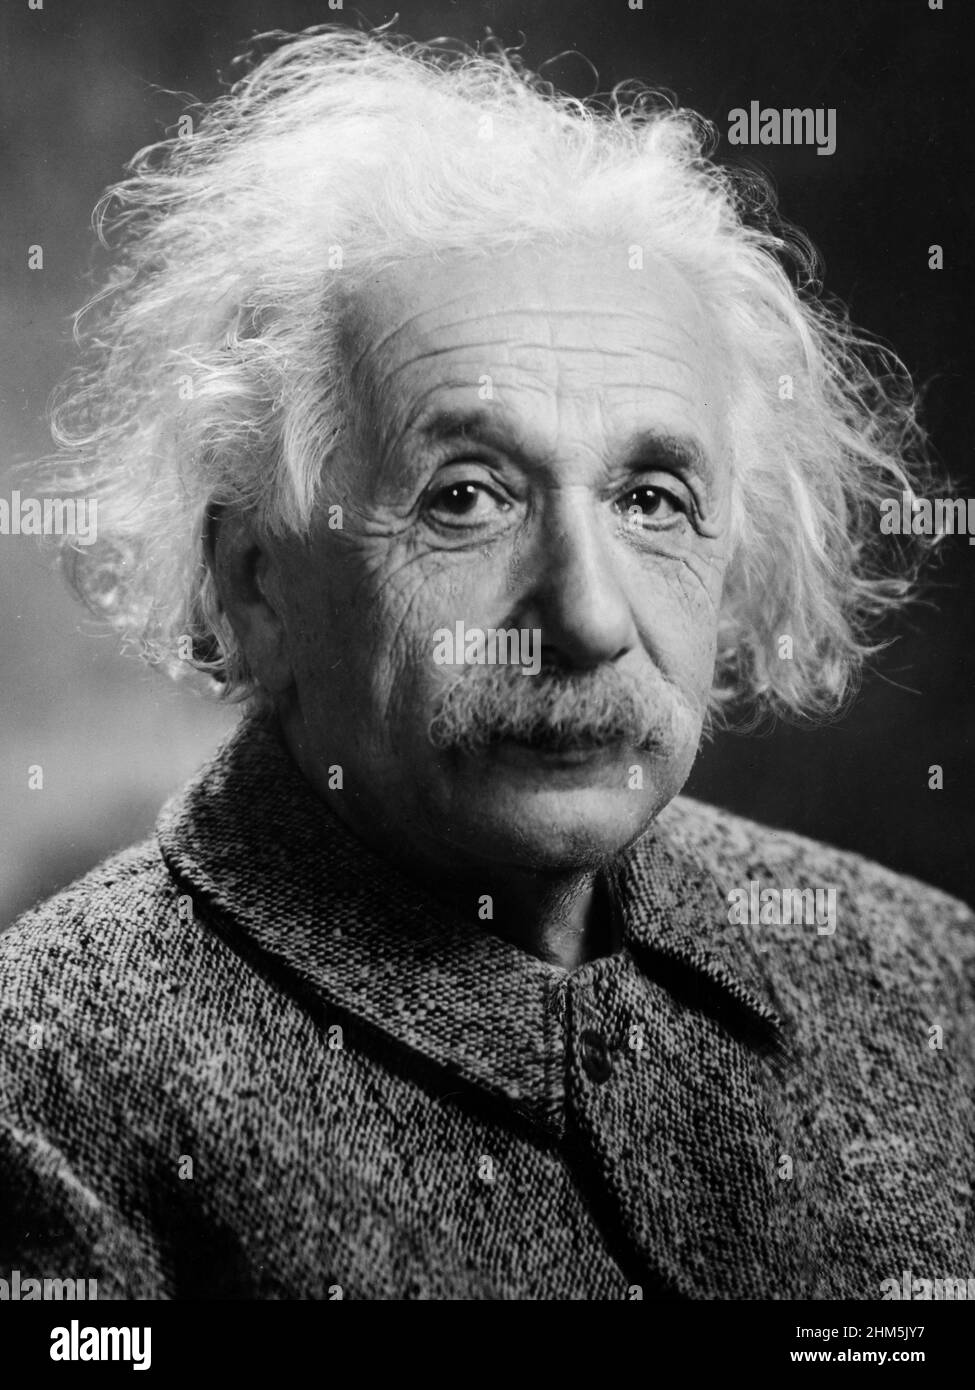 The genius Albert Einstein (1879-1955) portrait. Photograph by Orren Jack Turner, Princeton, N.J. 1947. Stock Photo